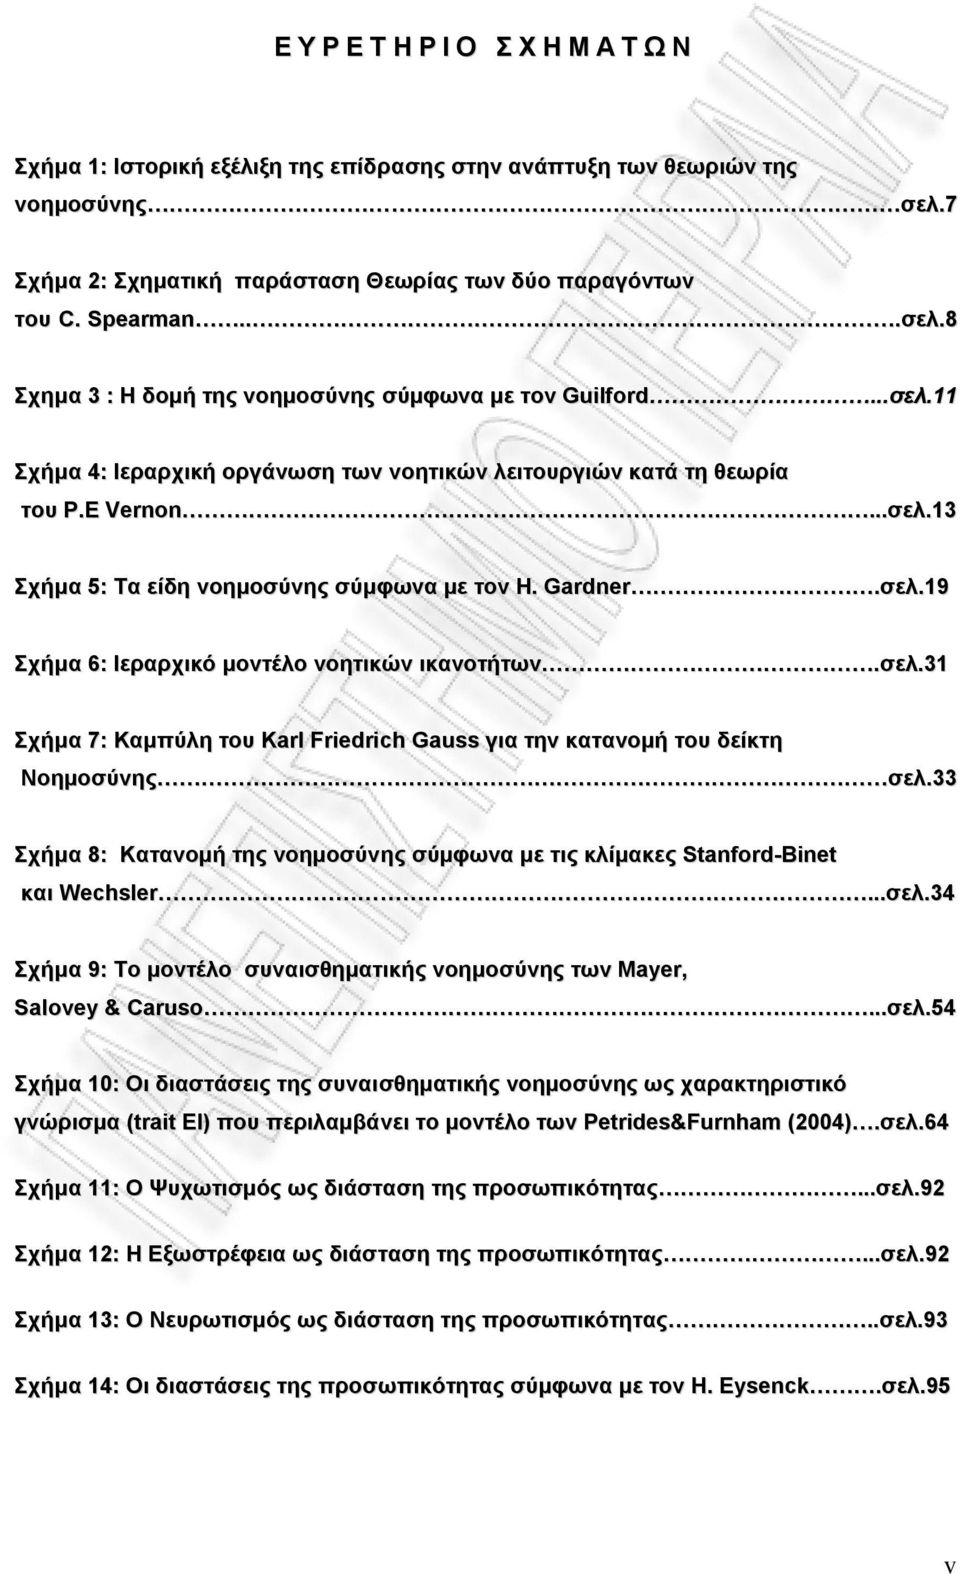 σελ.31 Σχήμα 7: Καμπύλη του Karl Friedrich Gauss για την κατανομή του δείκτη Νοημοσύνης σελ.33 Σχήμα 8: Κατανομή της νοημοσύνης σύμφωνα με τις κλίμακες Stanford-Binet και Wechsler...σελ.34 Σχήμα 9: To μοντέλο συναισθηματικής νοημοσύνης των Mayer, Salovey & Caruso.